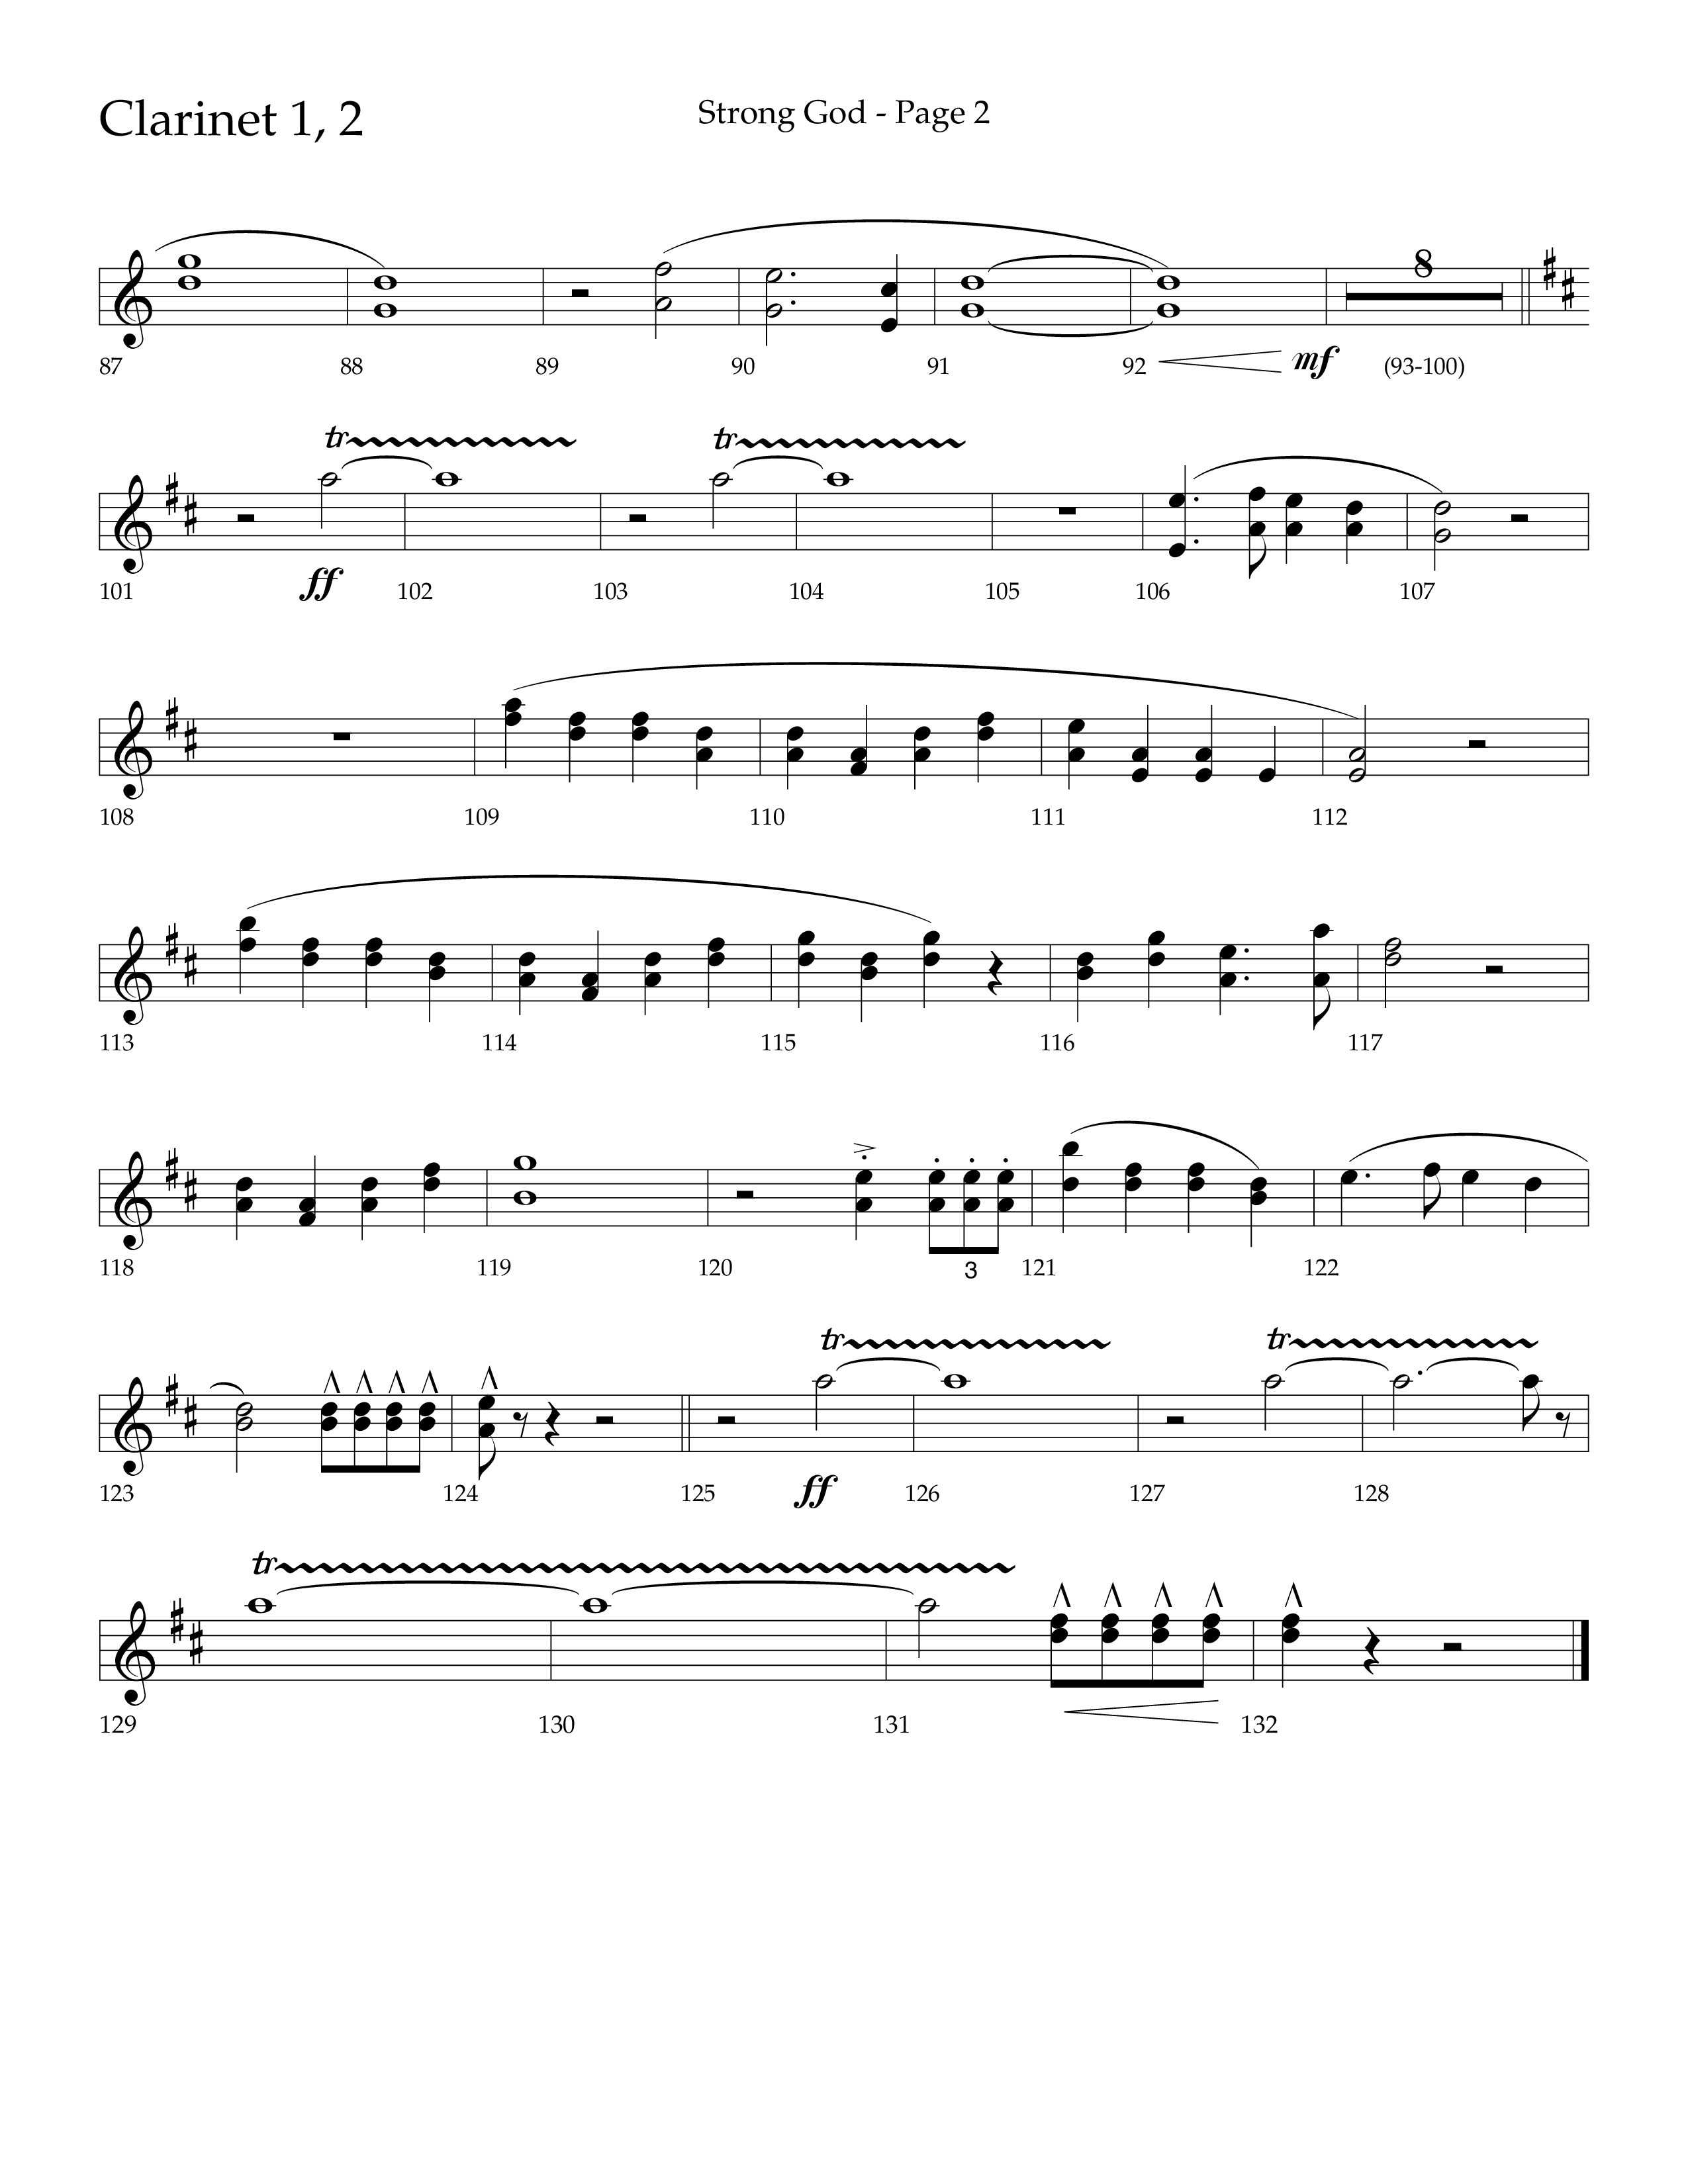 Strong God (Choral Anthem SATB) Clarinet 1/2 (Lifeway Choral / Arr. Craig Adams / Arr. Bruce Cokeroft / Orch. Craig Adams)